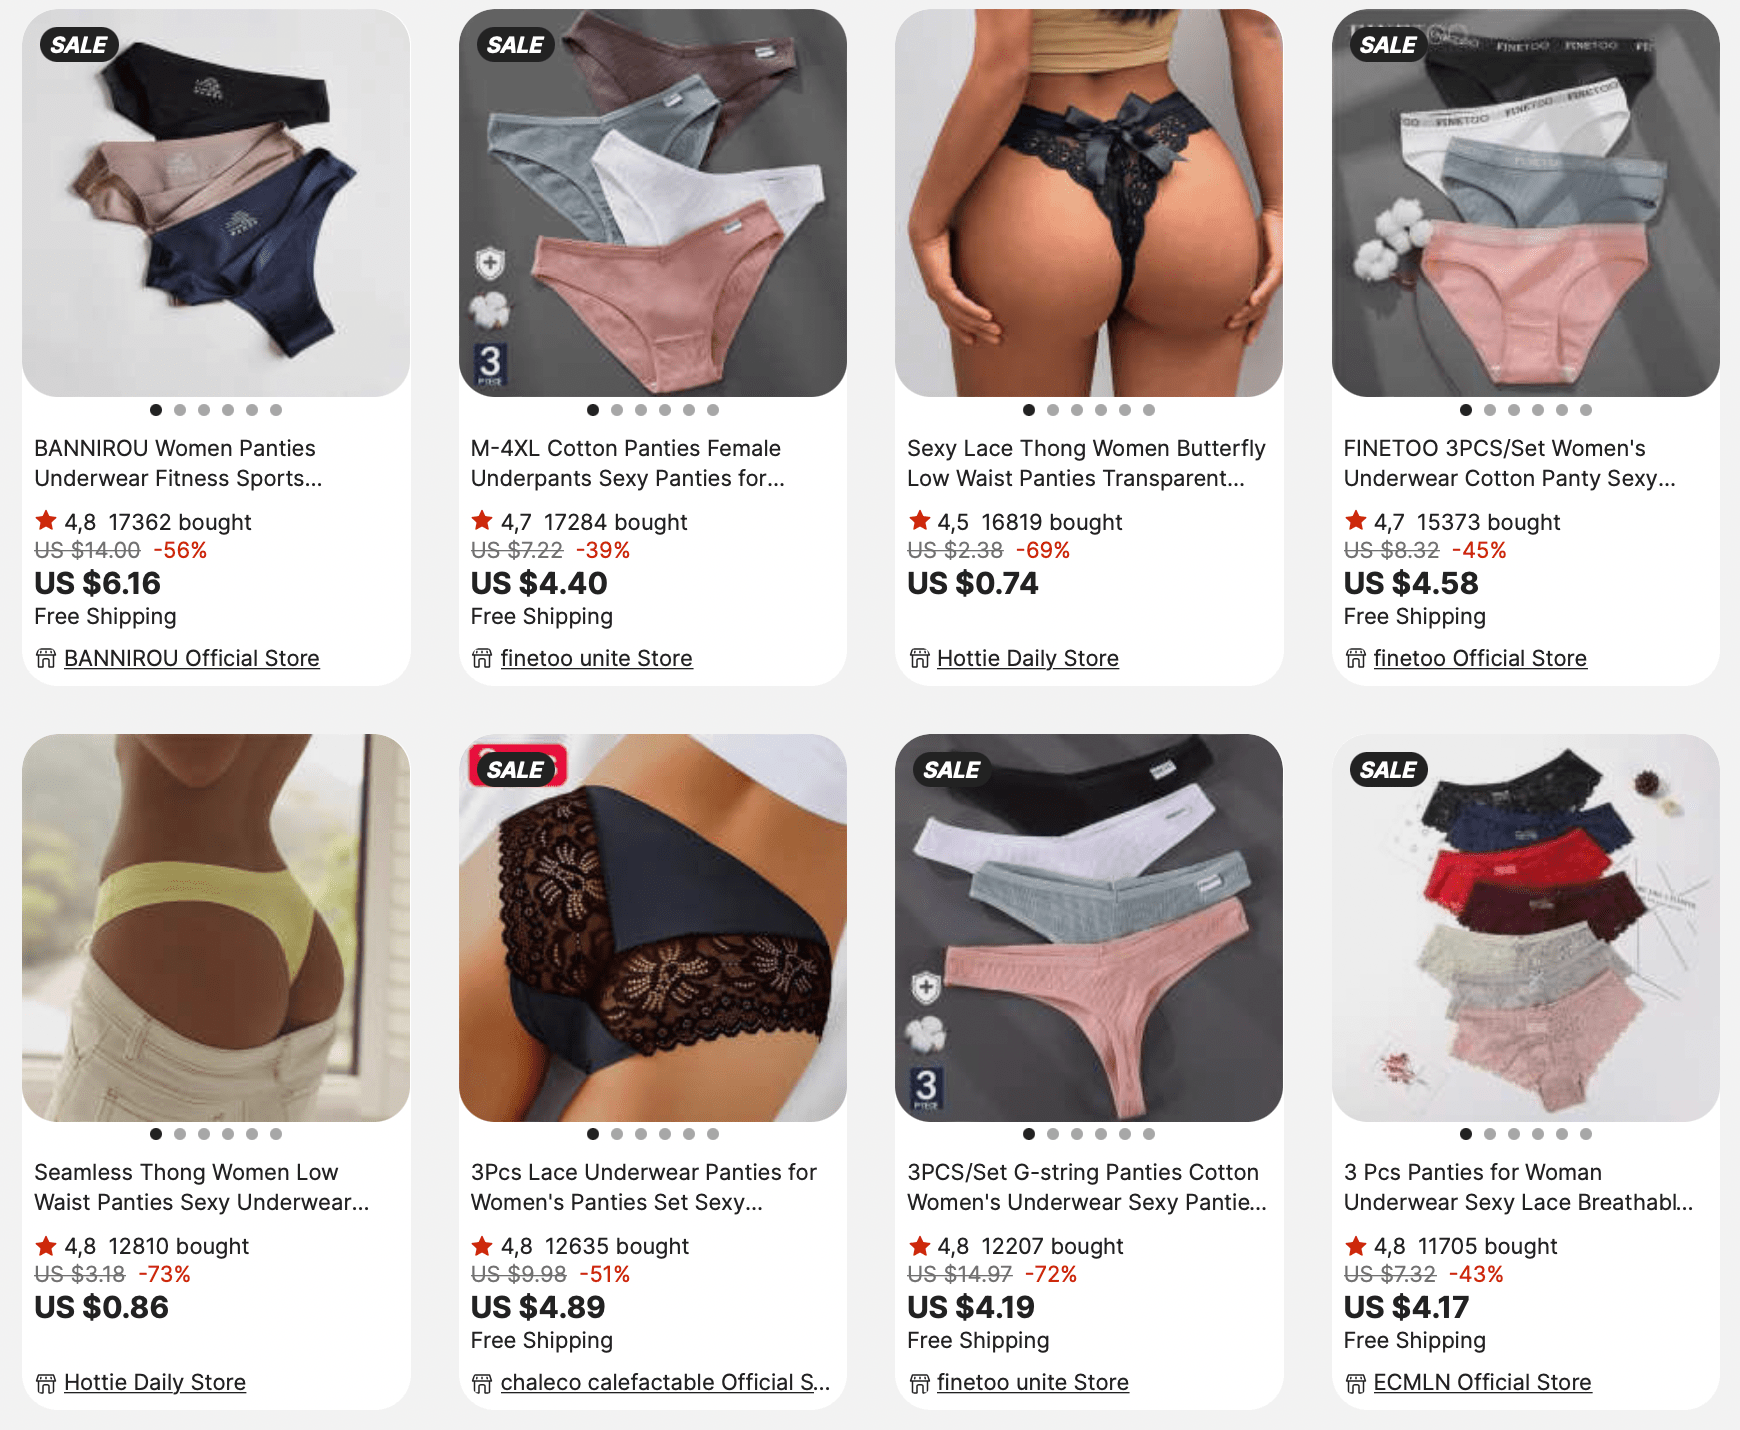 Dropship Calvin Klein Underwear Men Underwear to Sell Online at a Lower  Price